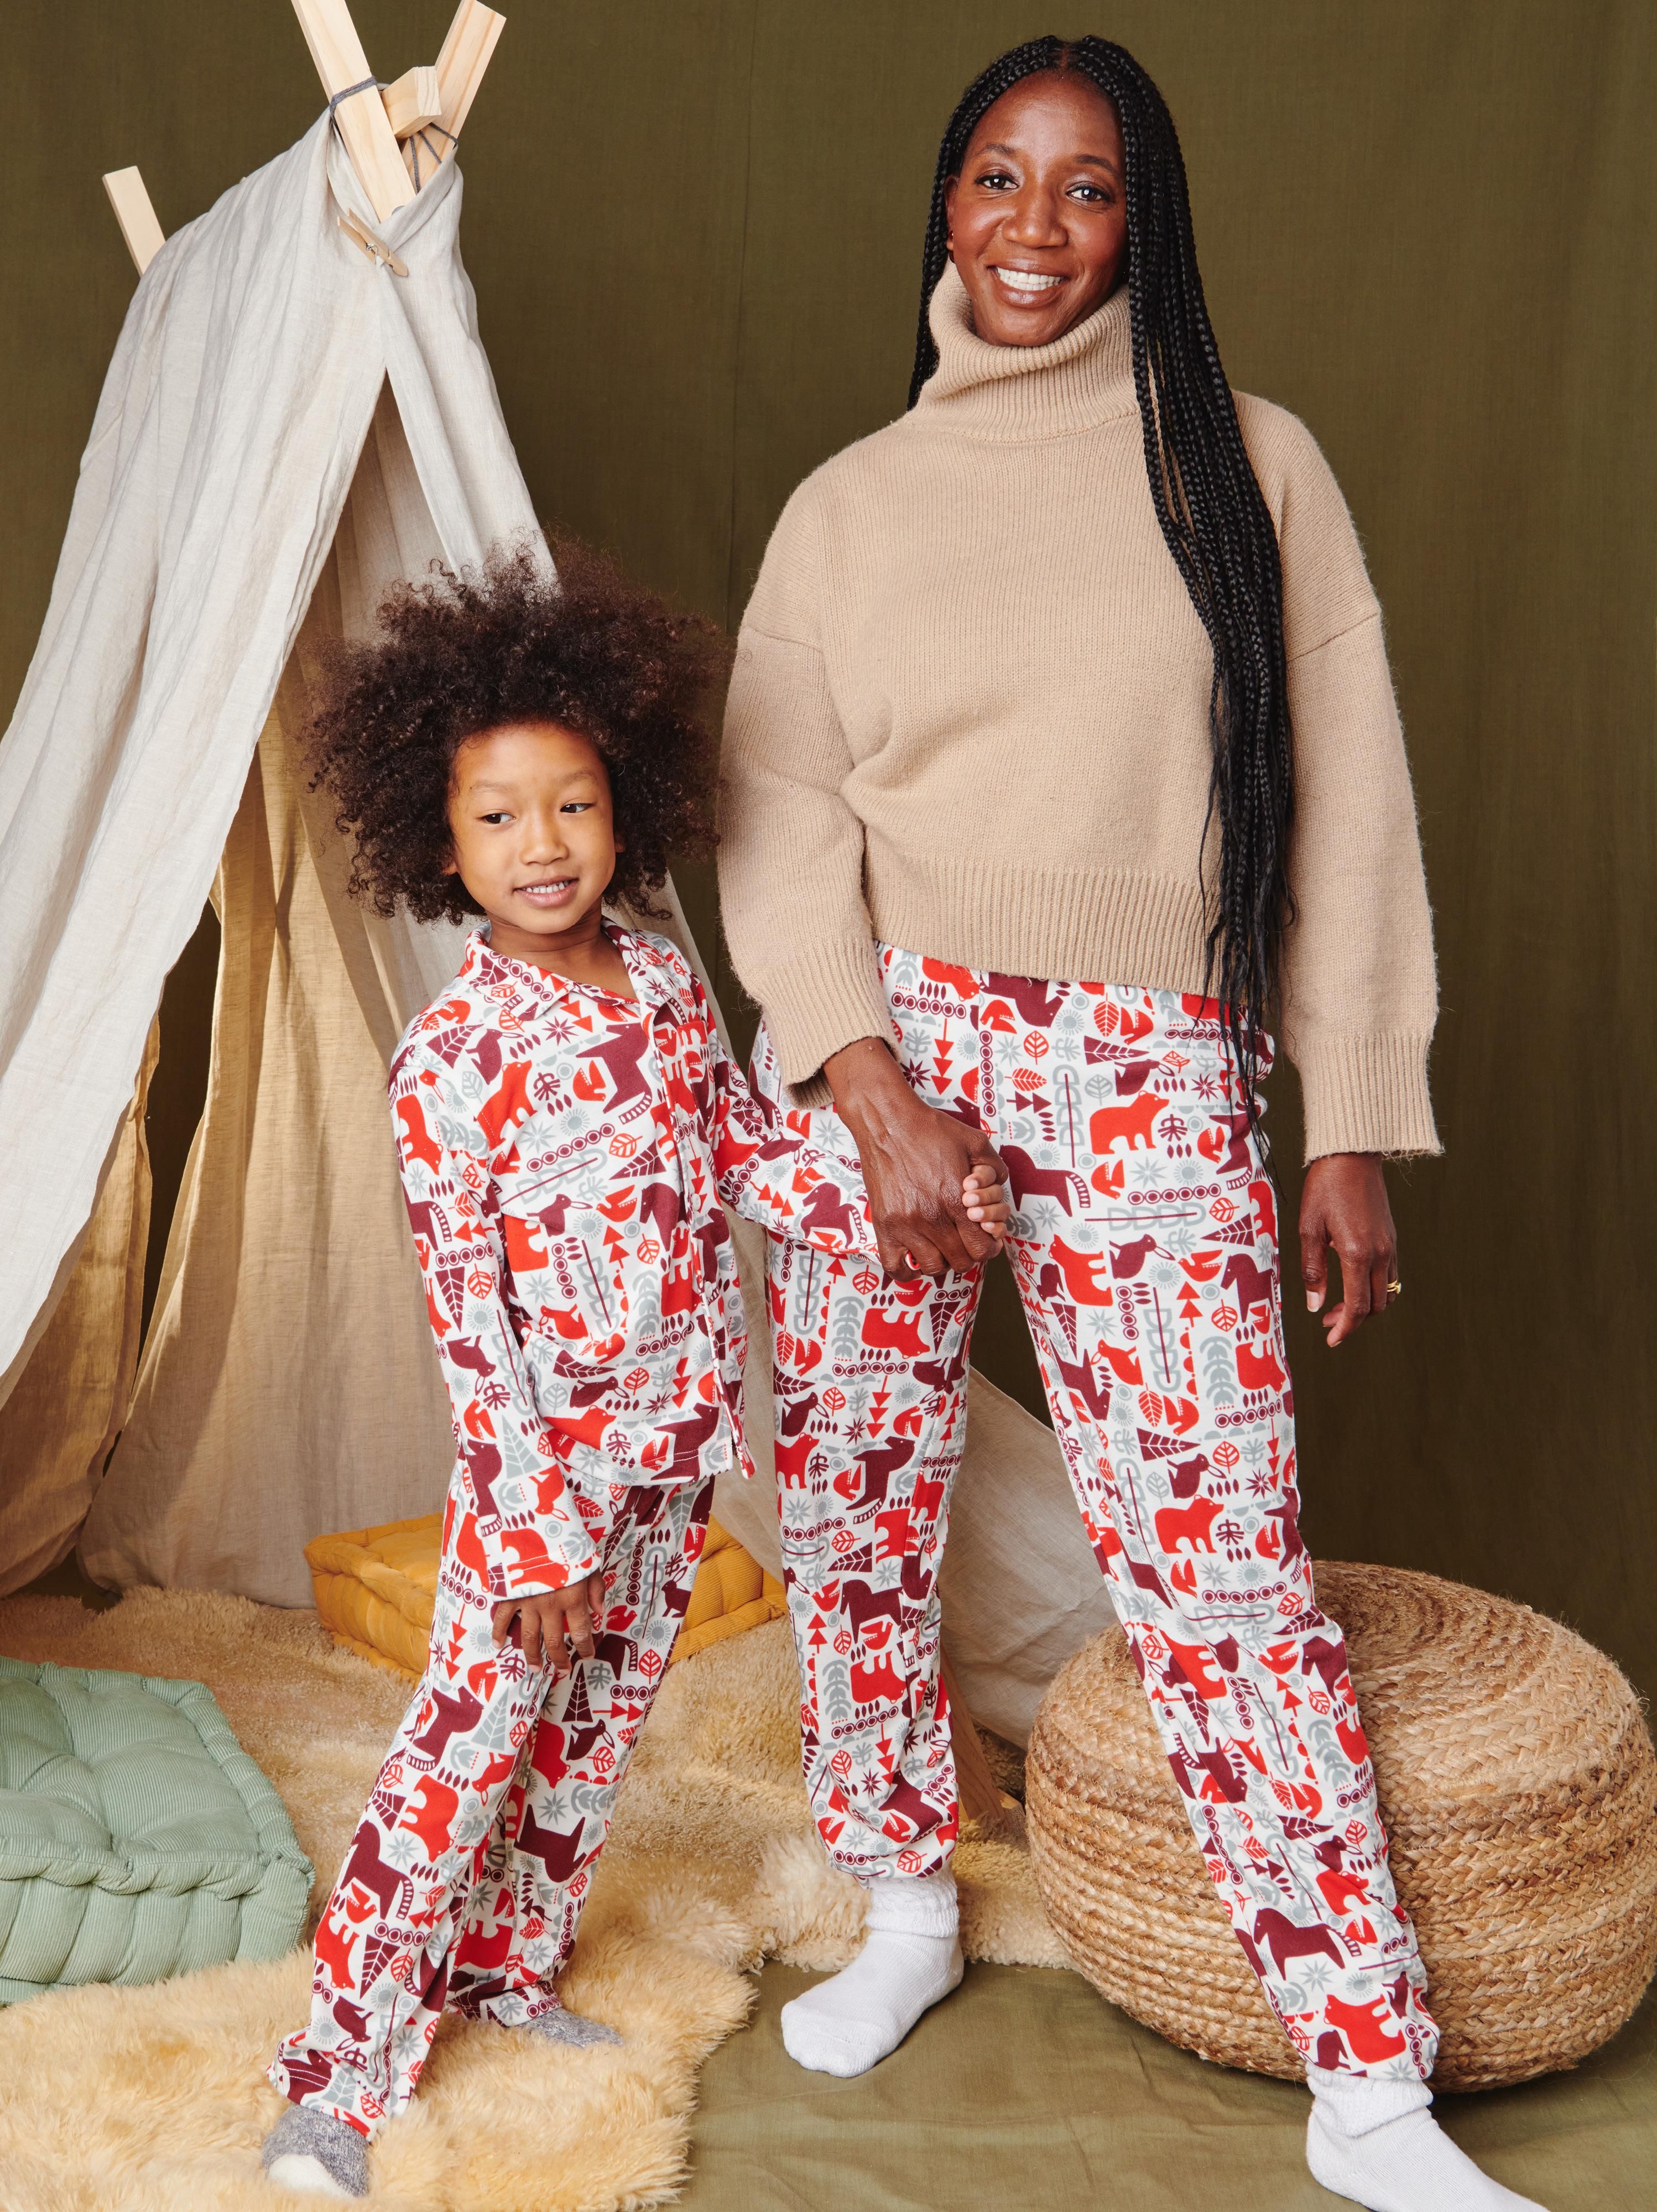 KYLEON Matching Family Christmas Pajamas Boys Girls Plaid Deer Pjs Toddler Kids Children Sleepwear Women Men Xmas Set